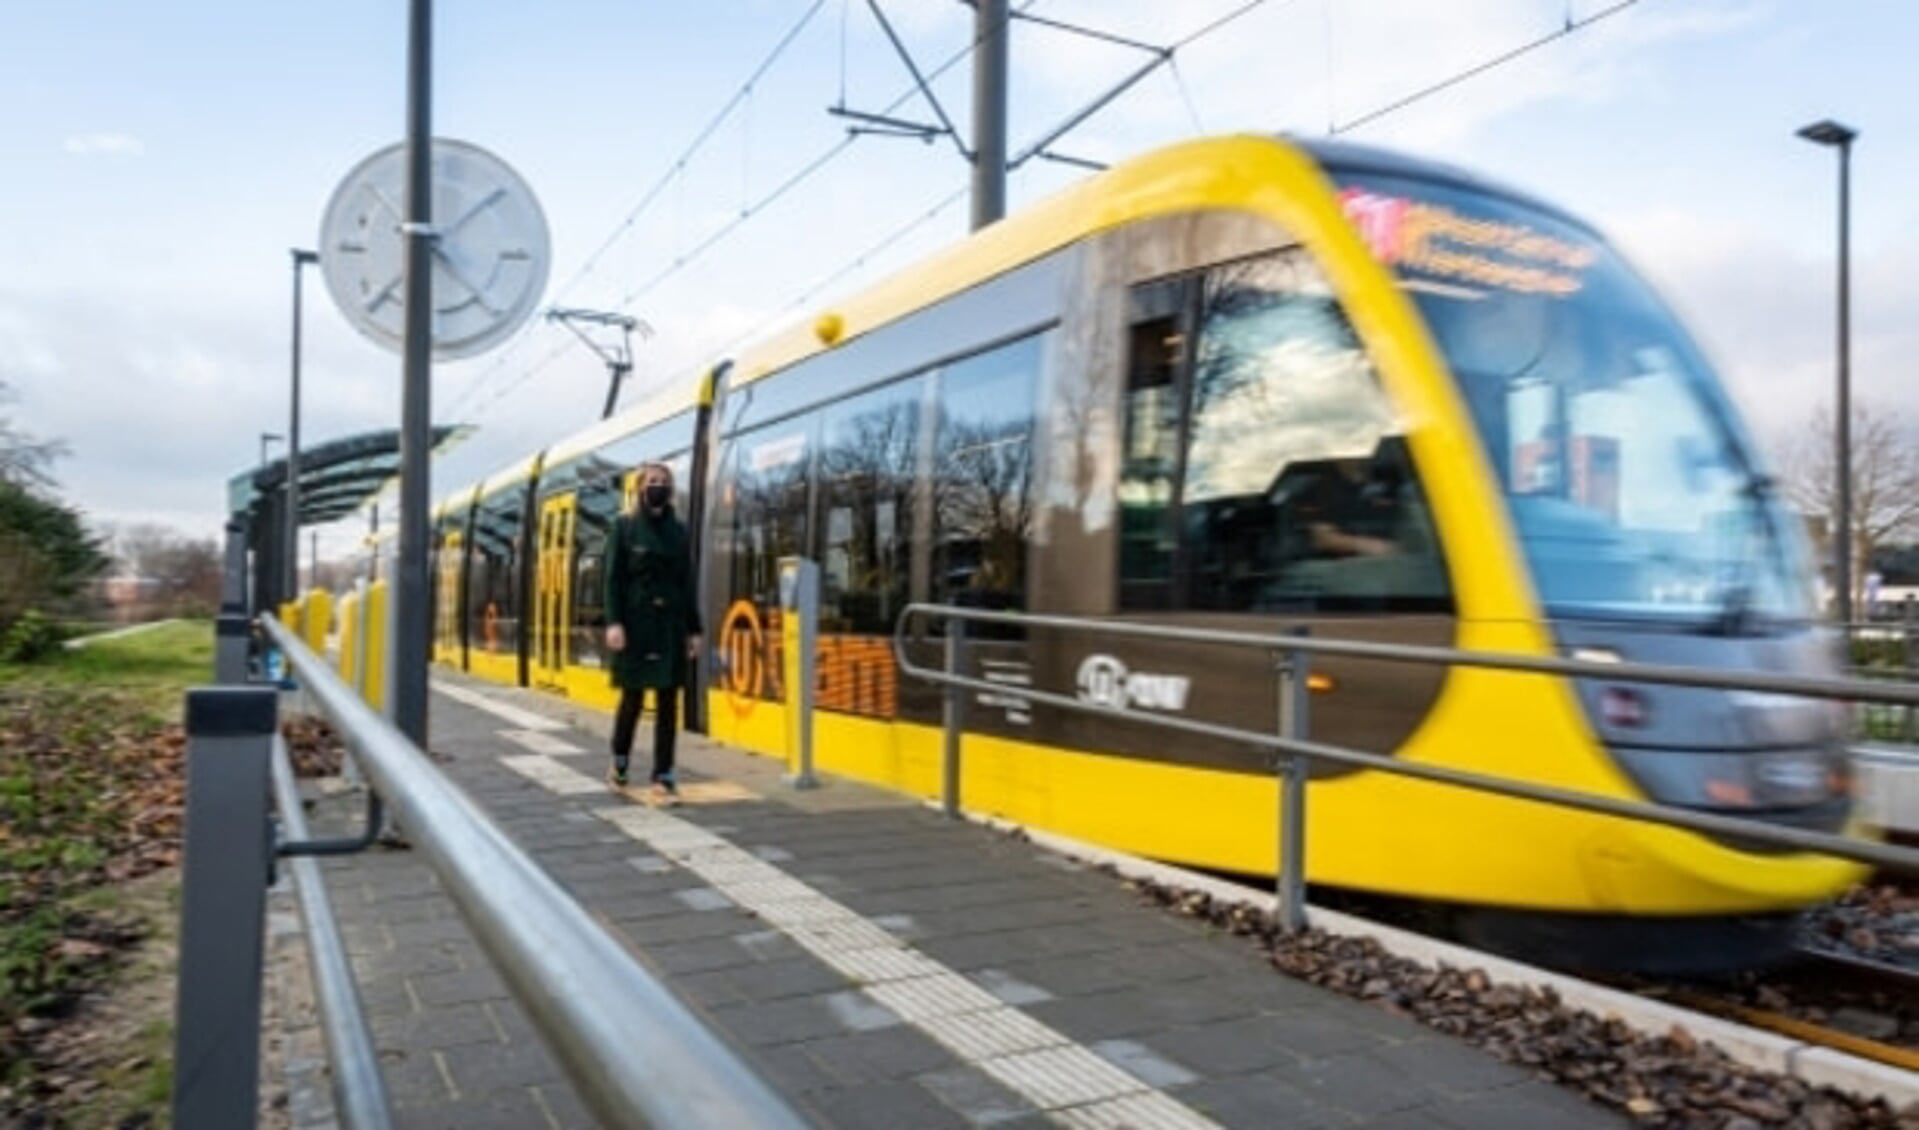 De nieuwe CAF-tram op de vernieuwde halte Zuilenstein (Nieuwegein). Foto: Rick Huisinga.